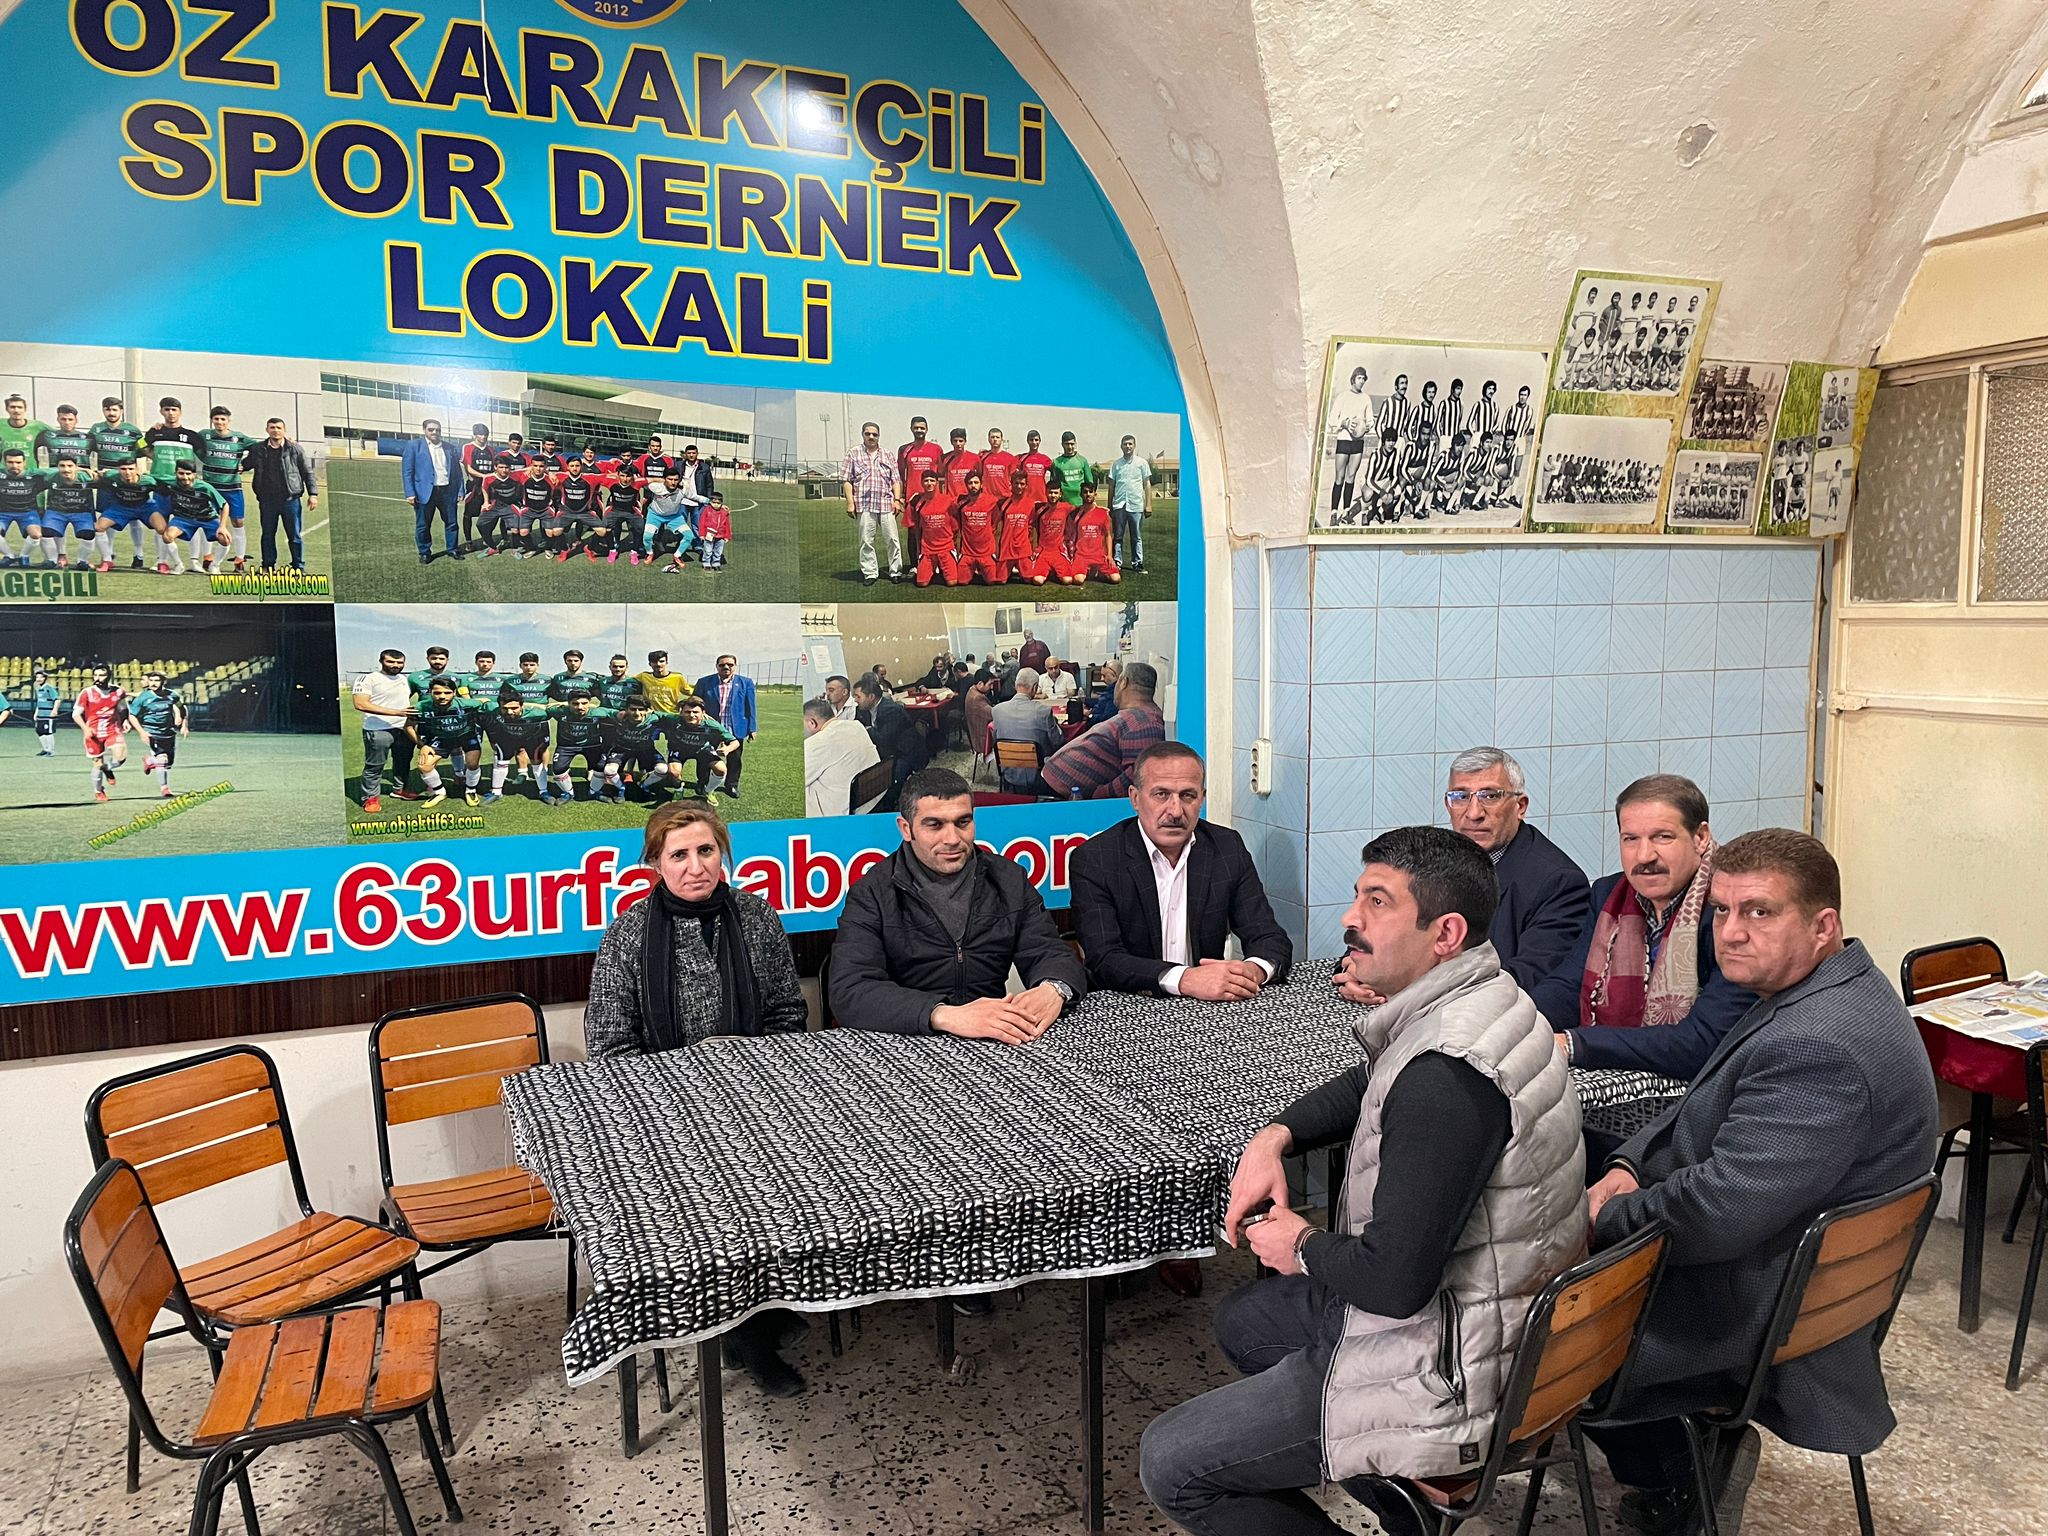 Öz Karakeçili Spor Dernek Başkanı Mehmet Karakeçili Beyefendiyi ziyaret ederek, Amatör Sporcuların sorunlarını konuştuk. Misafirperverliğinden dolayı kendilerine teşekkür ediyoruz.